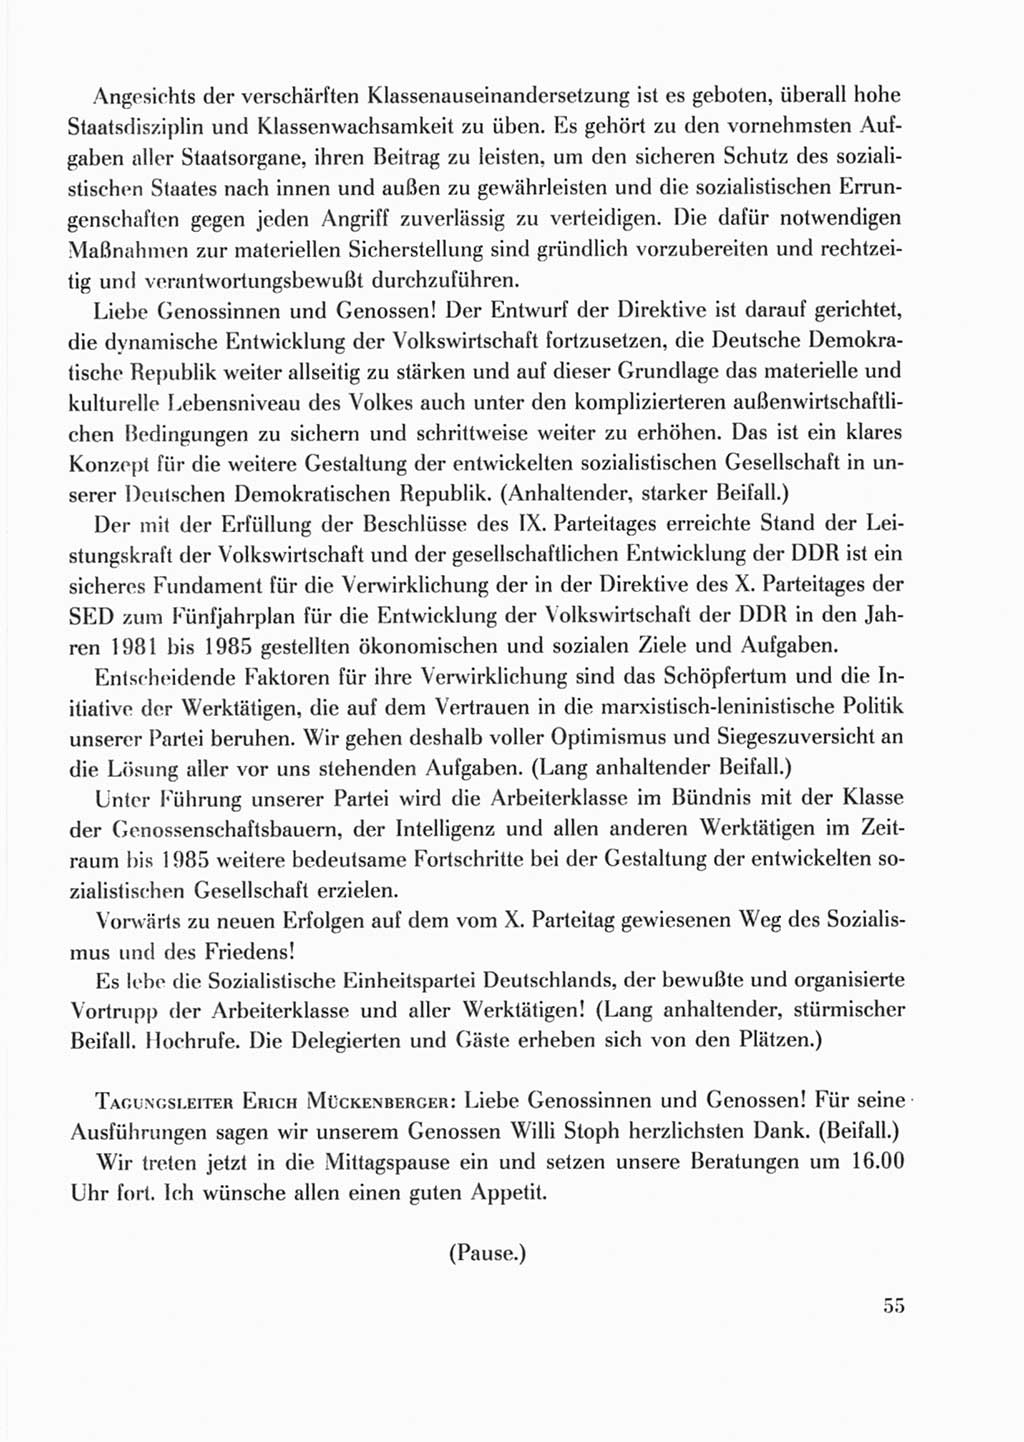 Protokoll der Verhandlungen des Ⅹ. Parteitages der Sozialistischen Einheitspartei Deutschlands (SED) [Deutsche Demokratische Republik (DDR)] 1981, Band 2, Seite 55 (Prot. Verh. Ⅹ. PT SED DDR 1981, Bd. 2, S. 55)